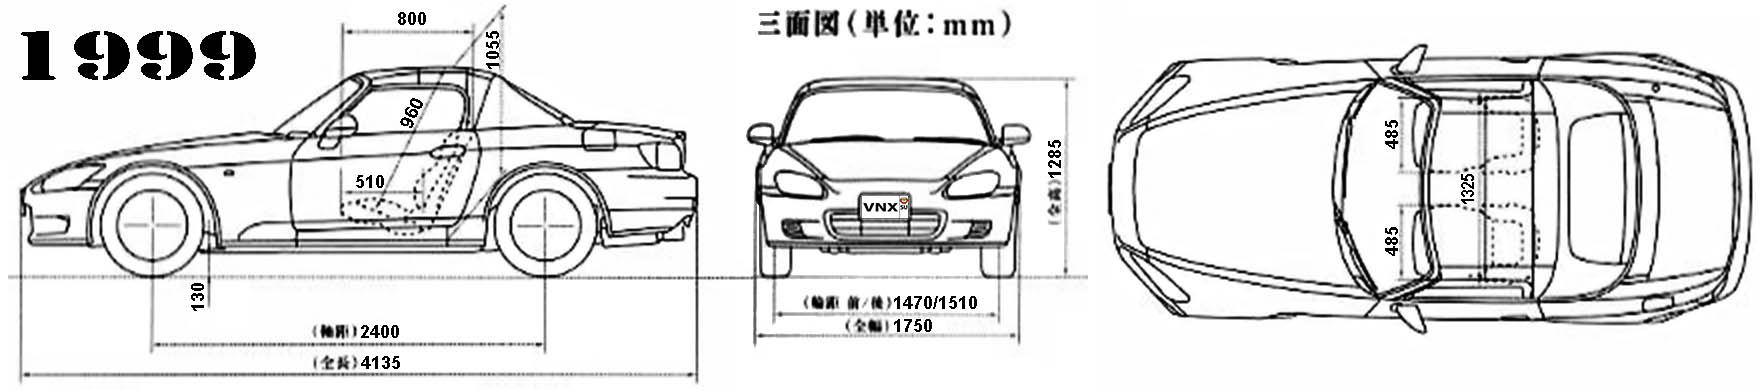 Габаритные размеры Хонда С2000 1999-2003 (dimensions Honda S2000 Mk1)